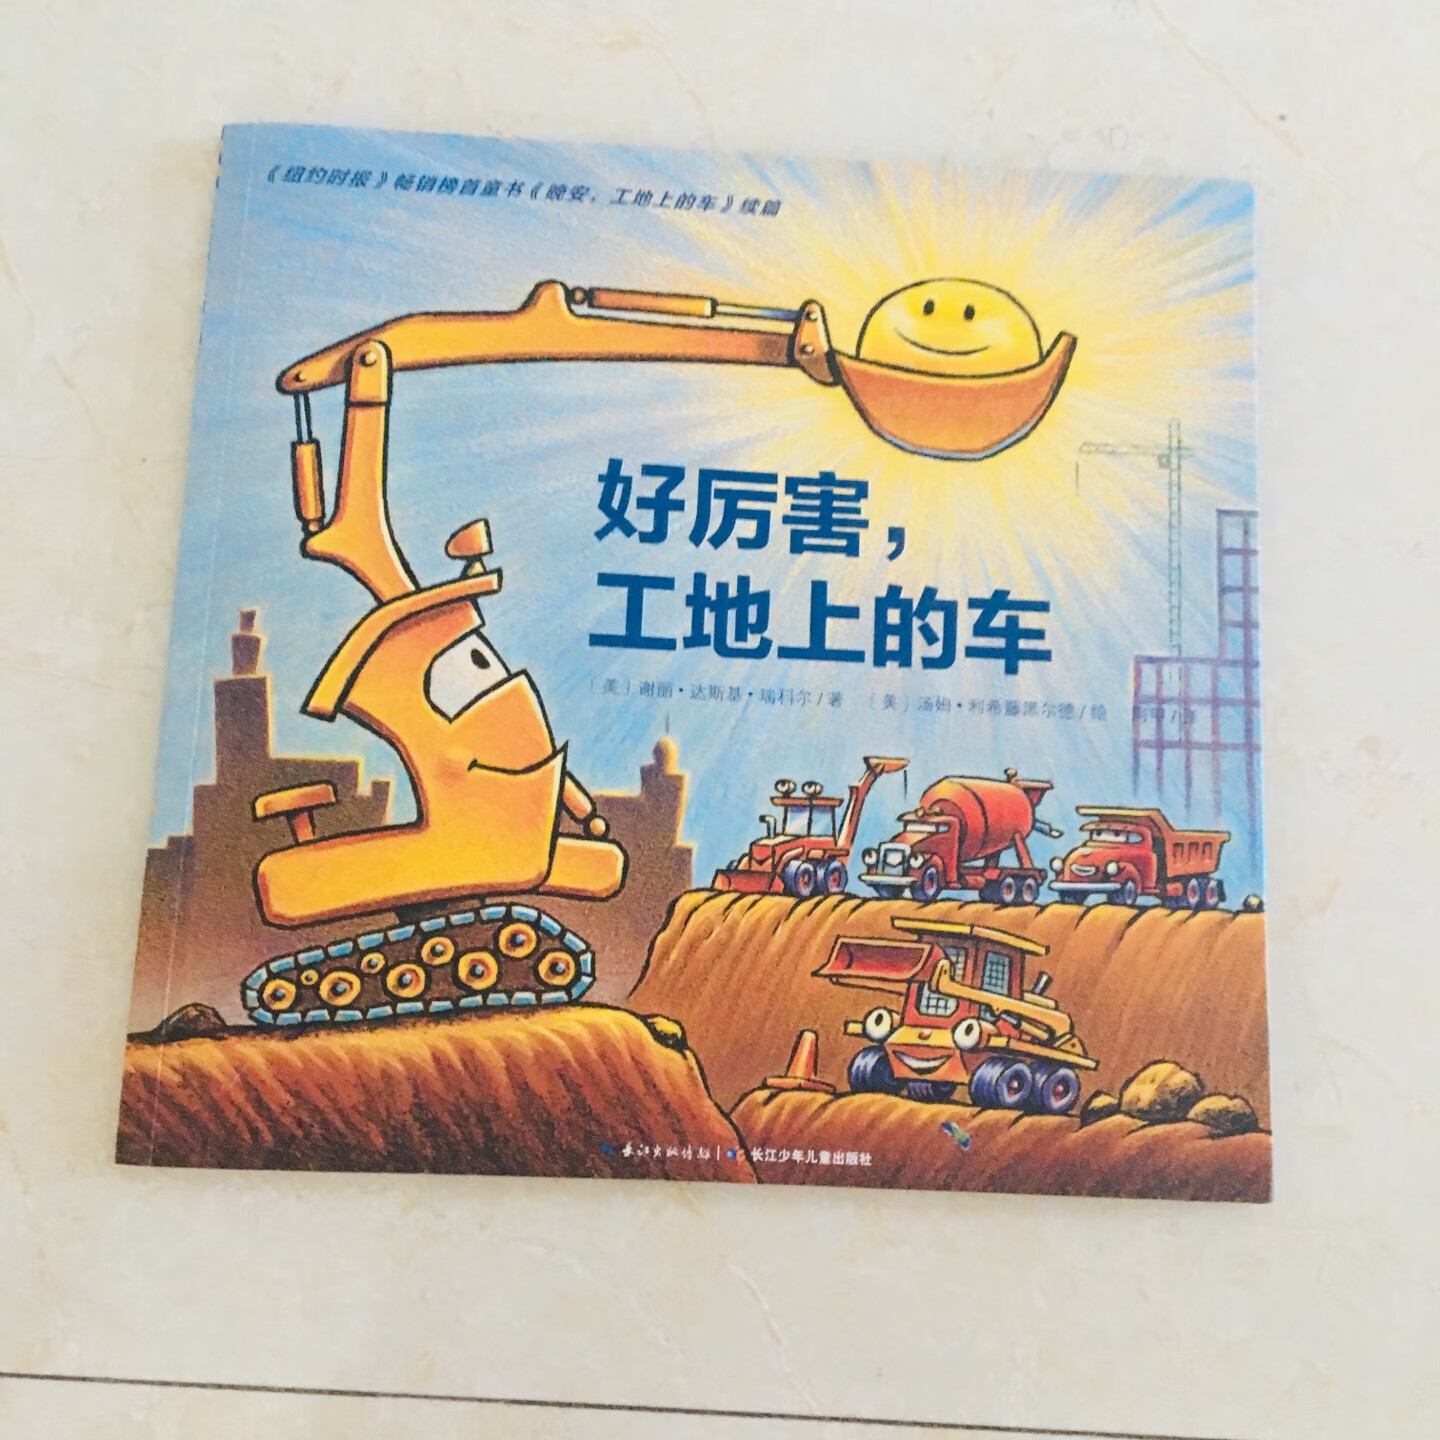 感觉这套书是男宝宝必备，孩子很喜欢看挖土机火车一类的，书的印刷也不错。